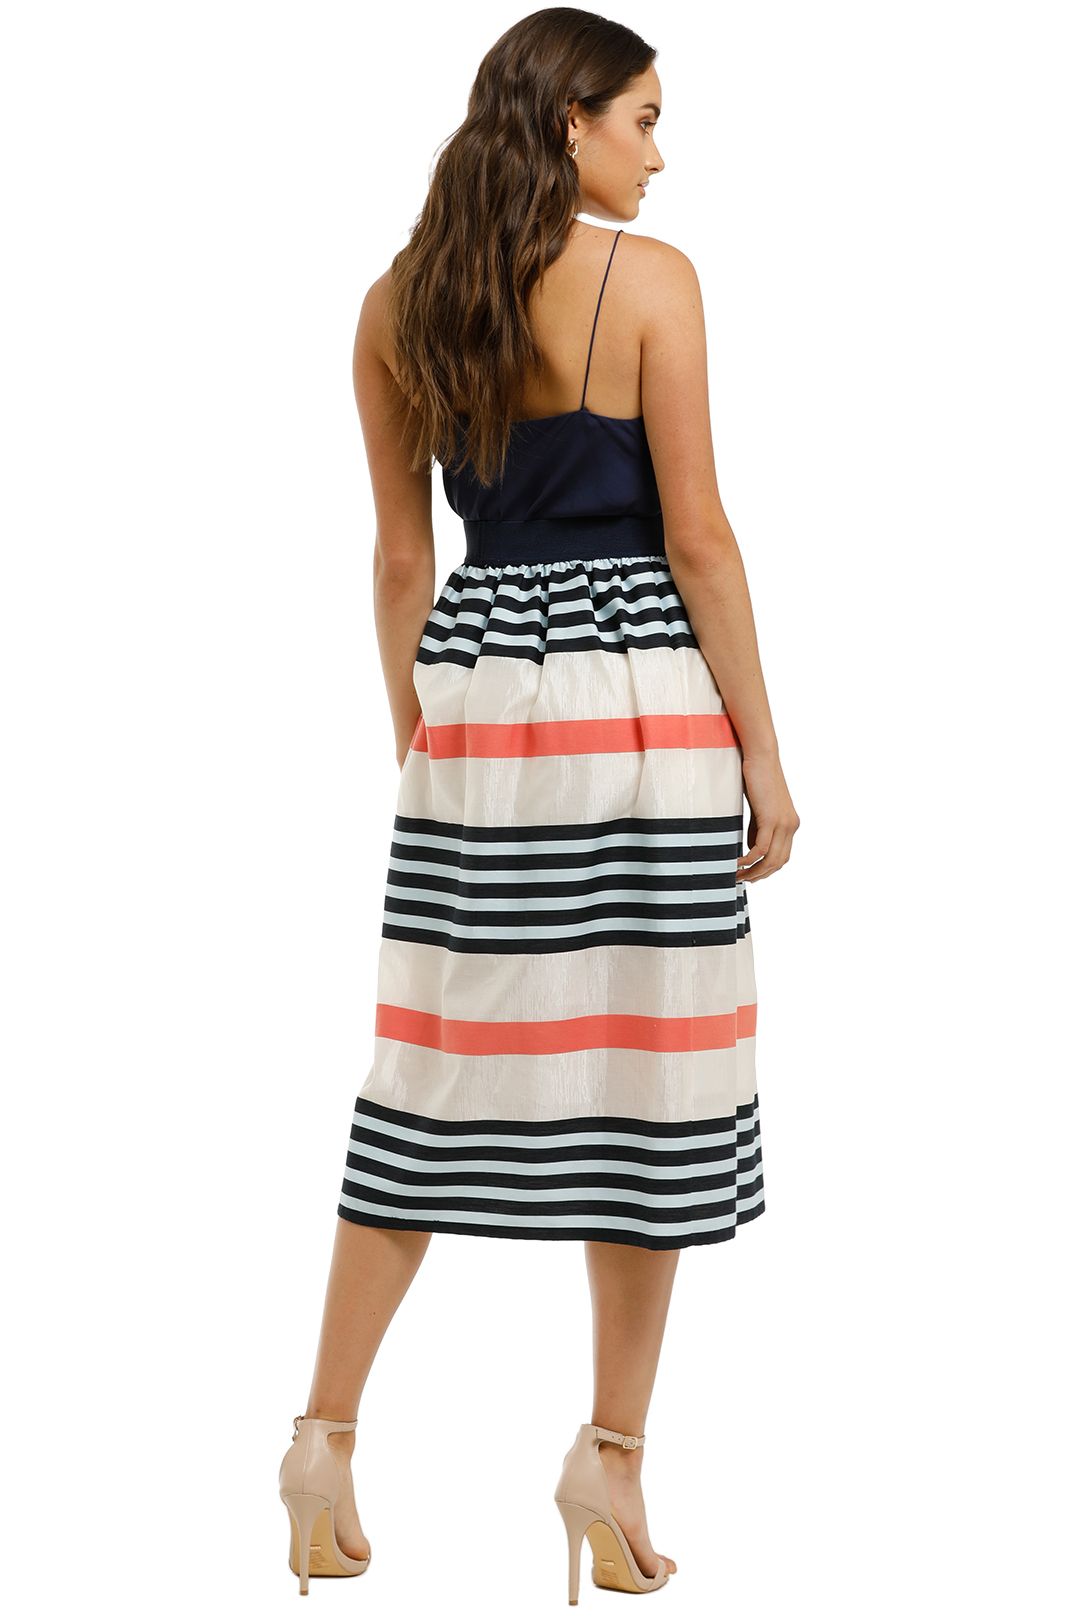 Cooper-By-Trelise-Cooper-Skirt-A-Holic-Skirt-Multi-Stripe-Back